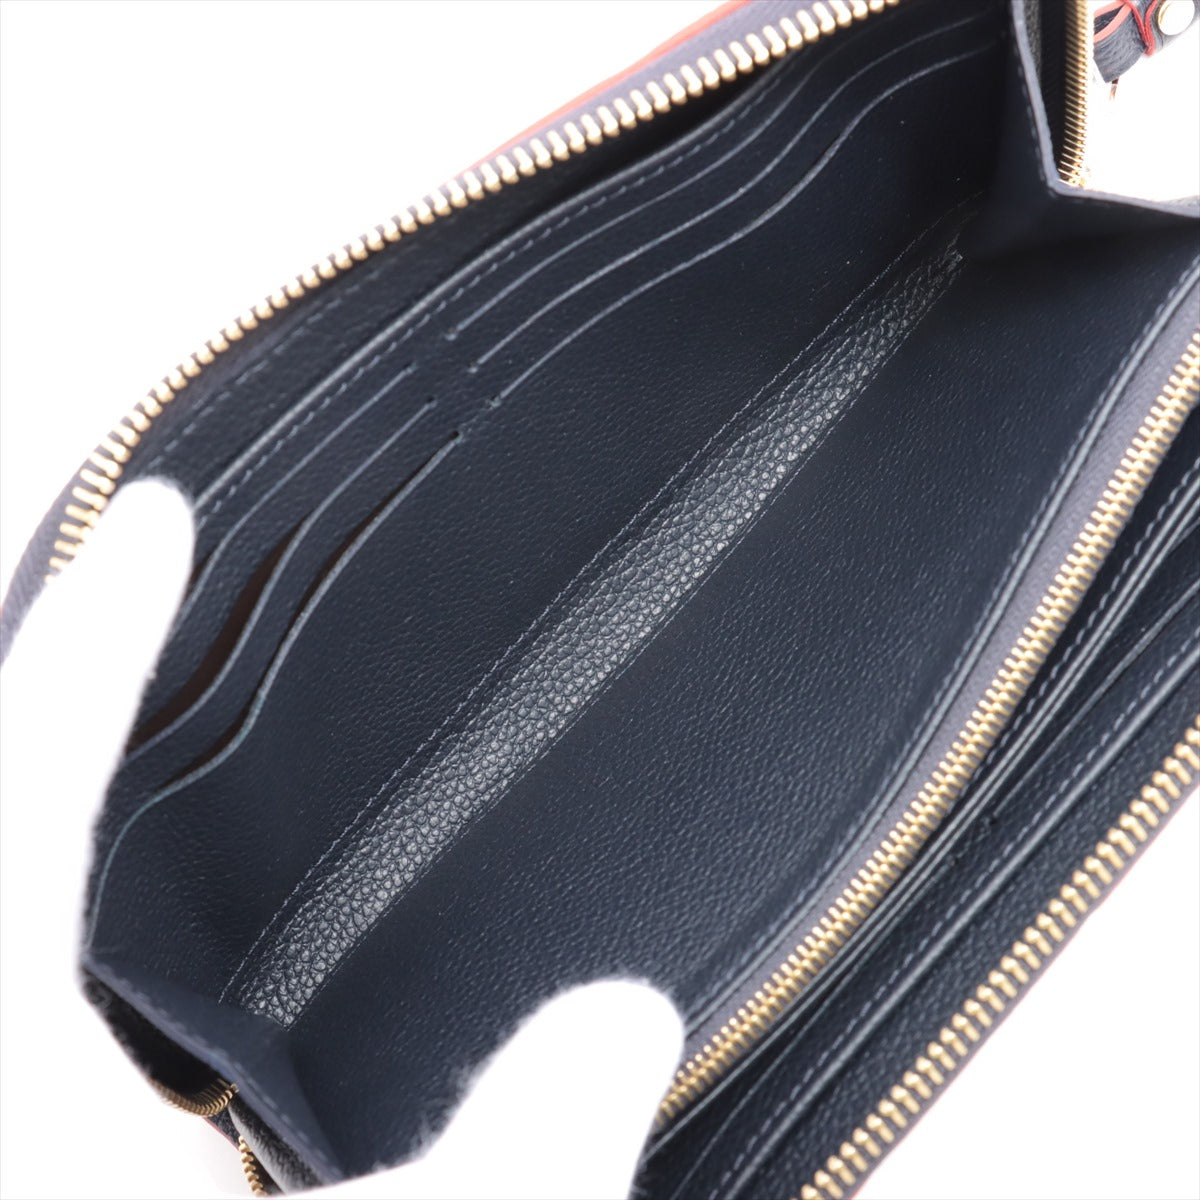 Louis Vuitton Monogram Empreinte Zippy Wallet M62121 Marine Rouge Zip Round Wallet Responsive RFID